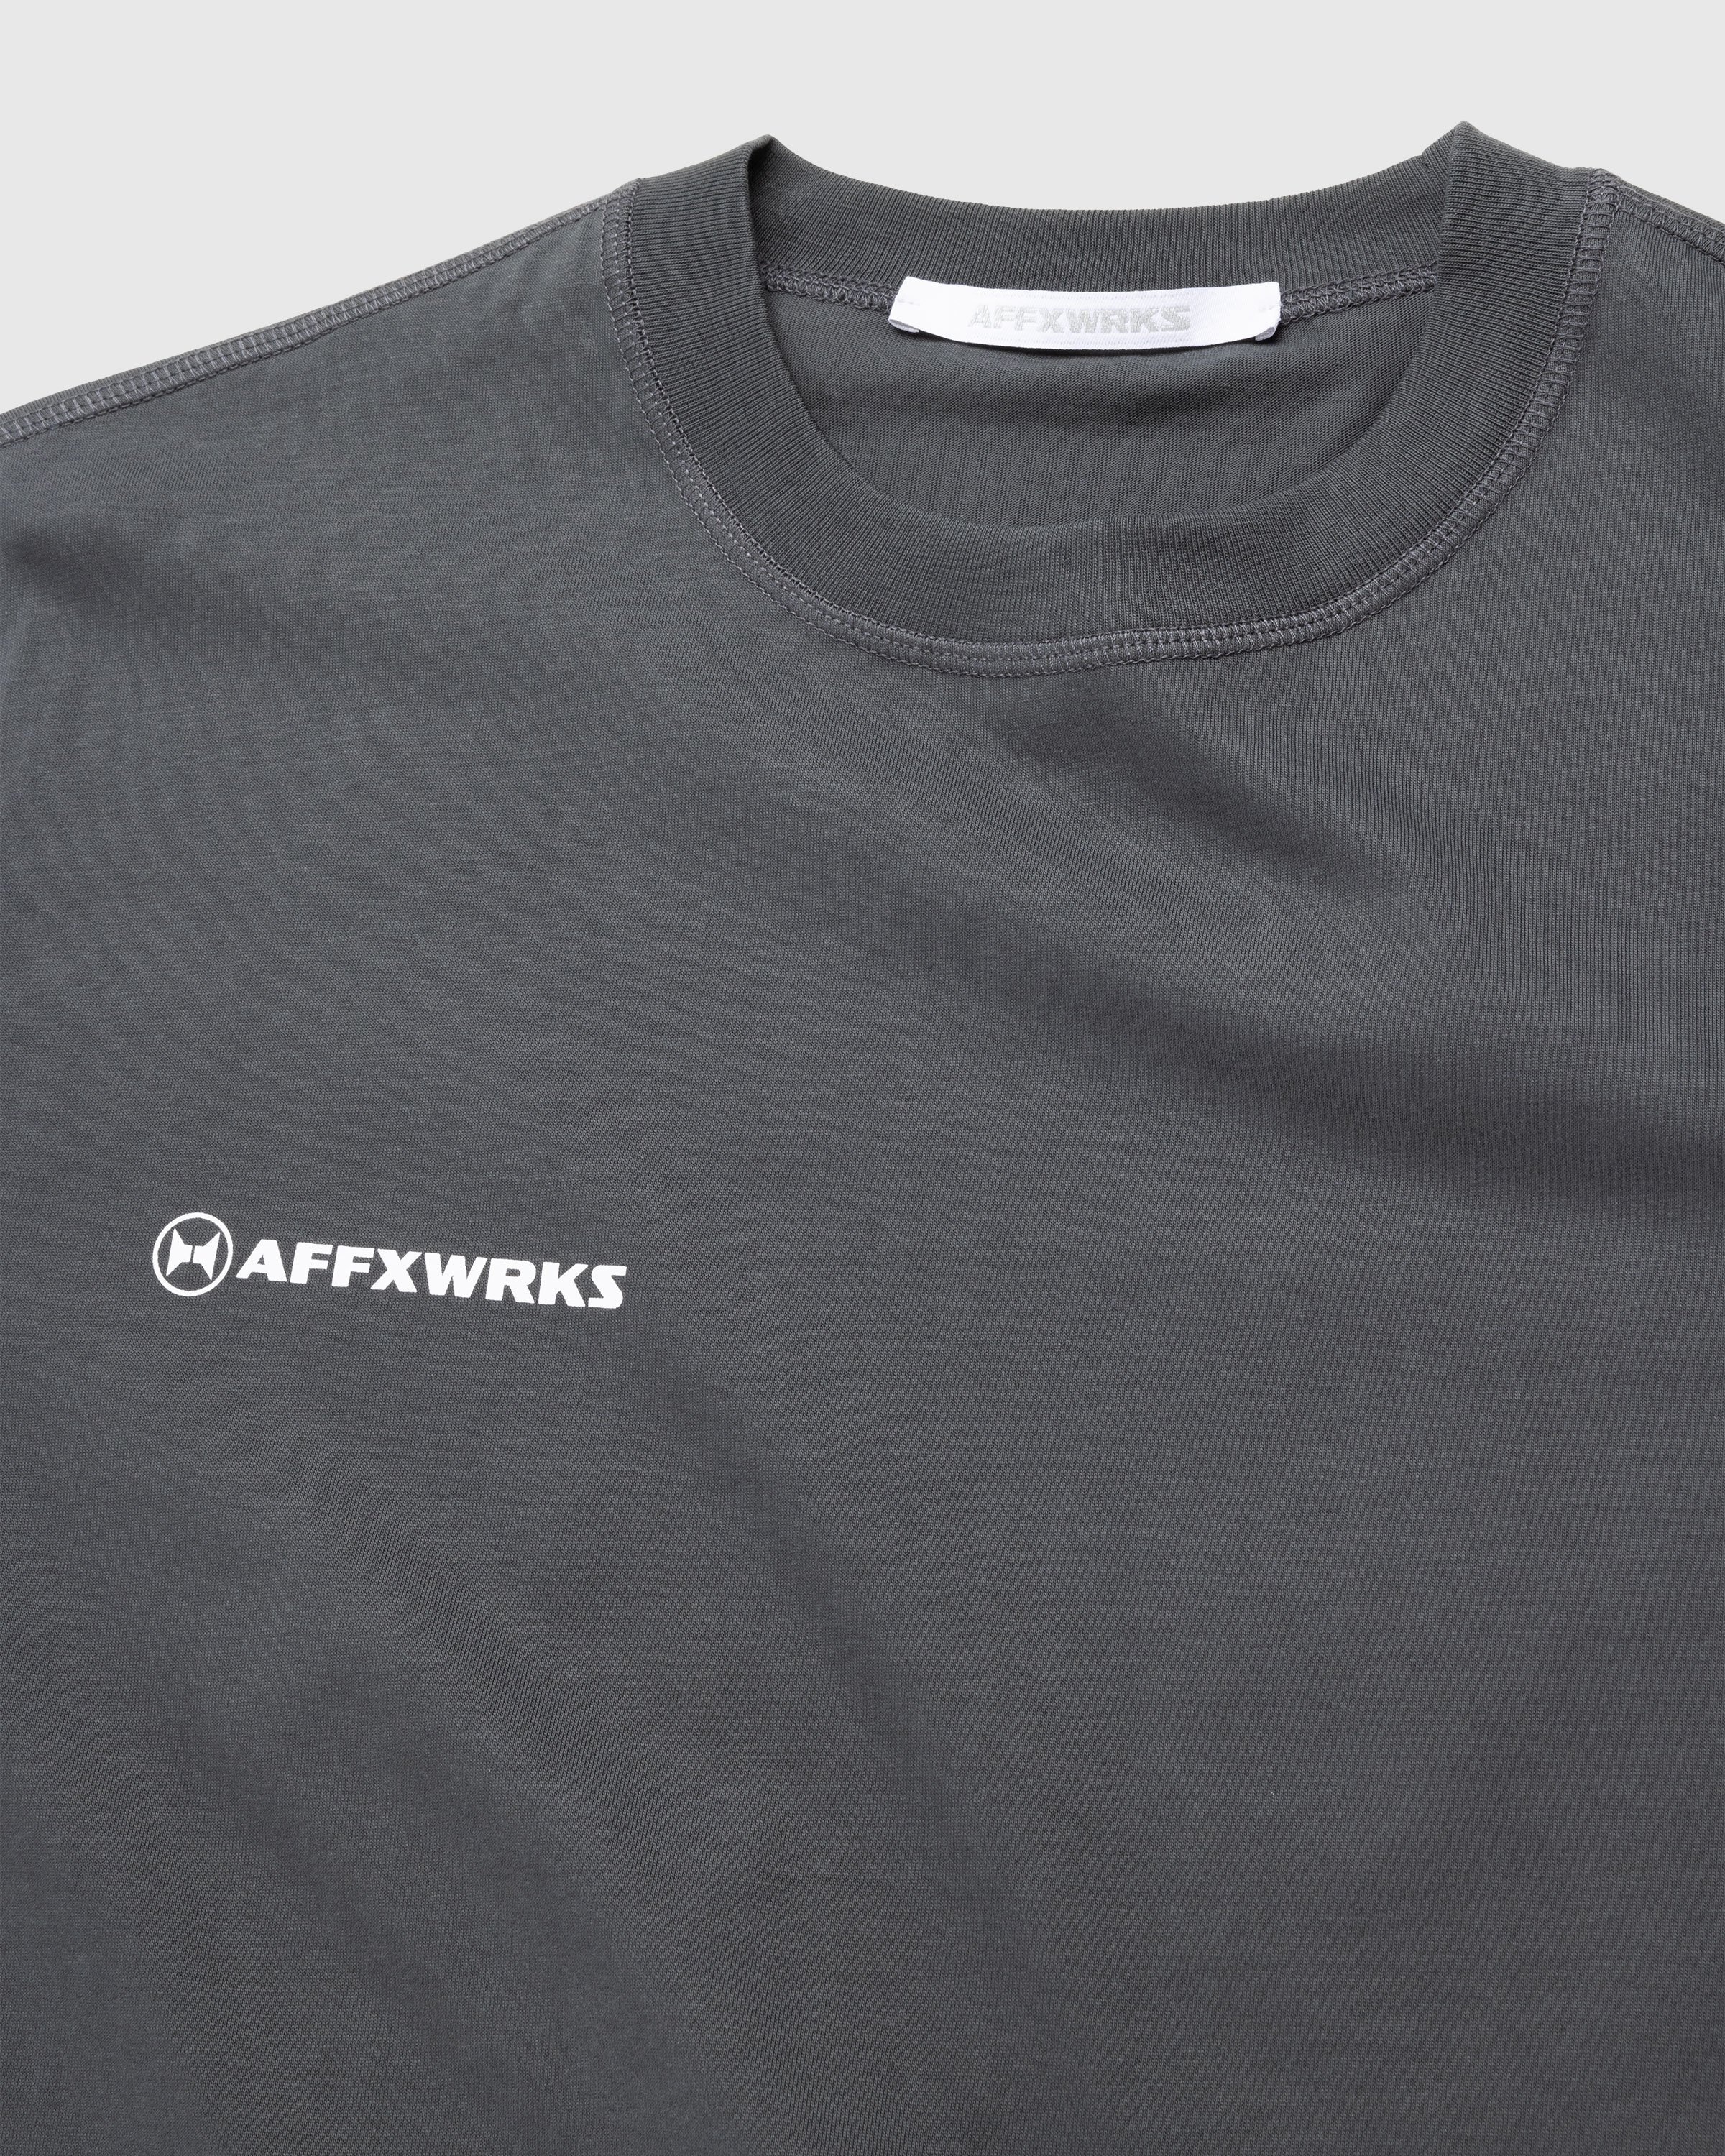 AFFXWRKS – AFFXWRKS T-Shirt Washed Black - T-shirts - Black - Image 7